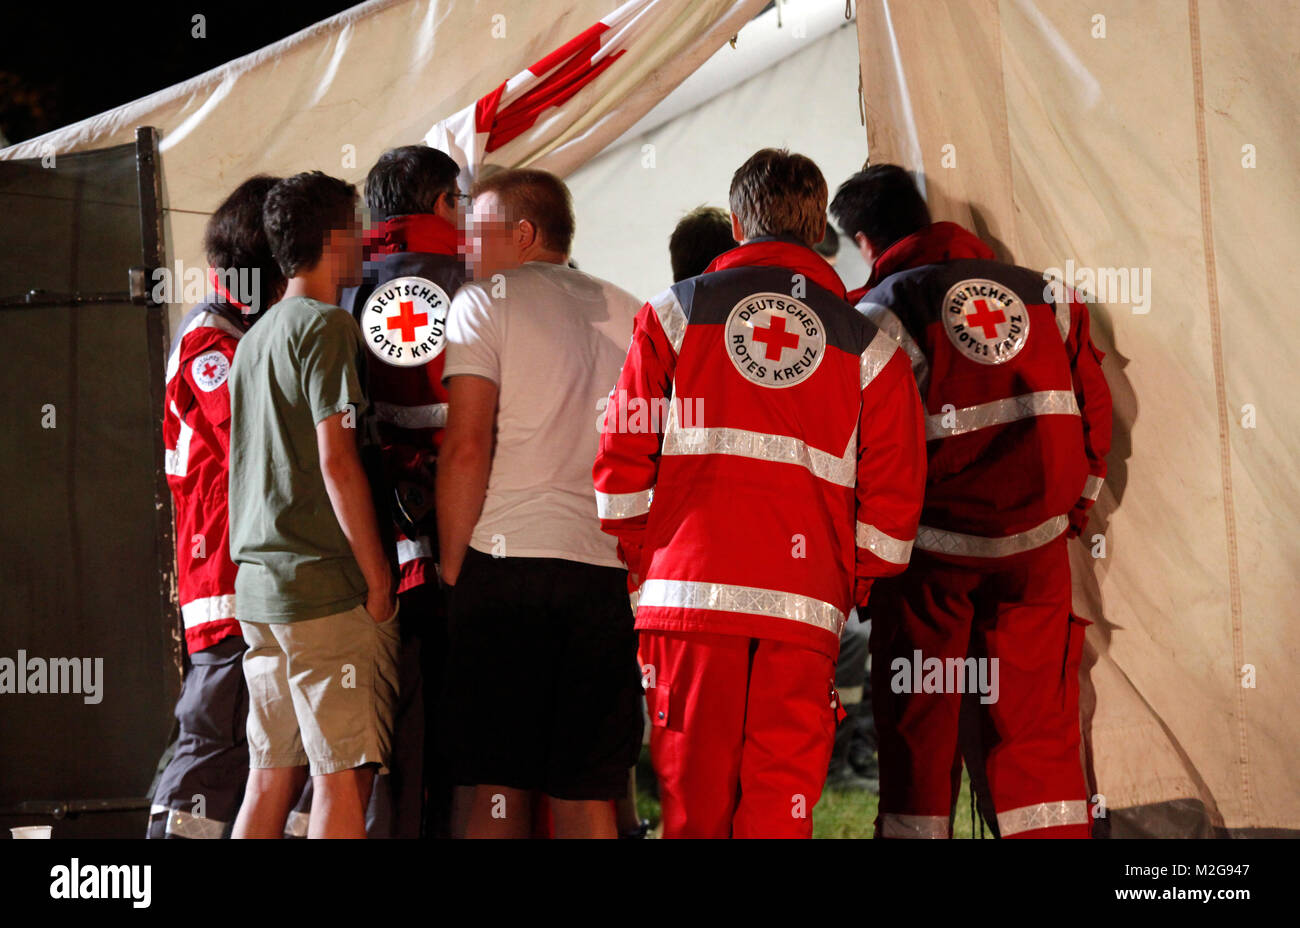 Nach dem Einsatz von CS-Gas im Festzelt der Laurentiuskerb wurden 27 Personen verletzt. 100 Einsatzkräfte waren vor Ort und kümmerten sich um die Betroffenen. Stock Photo